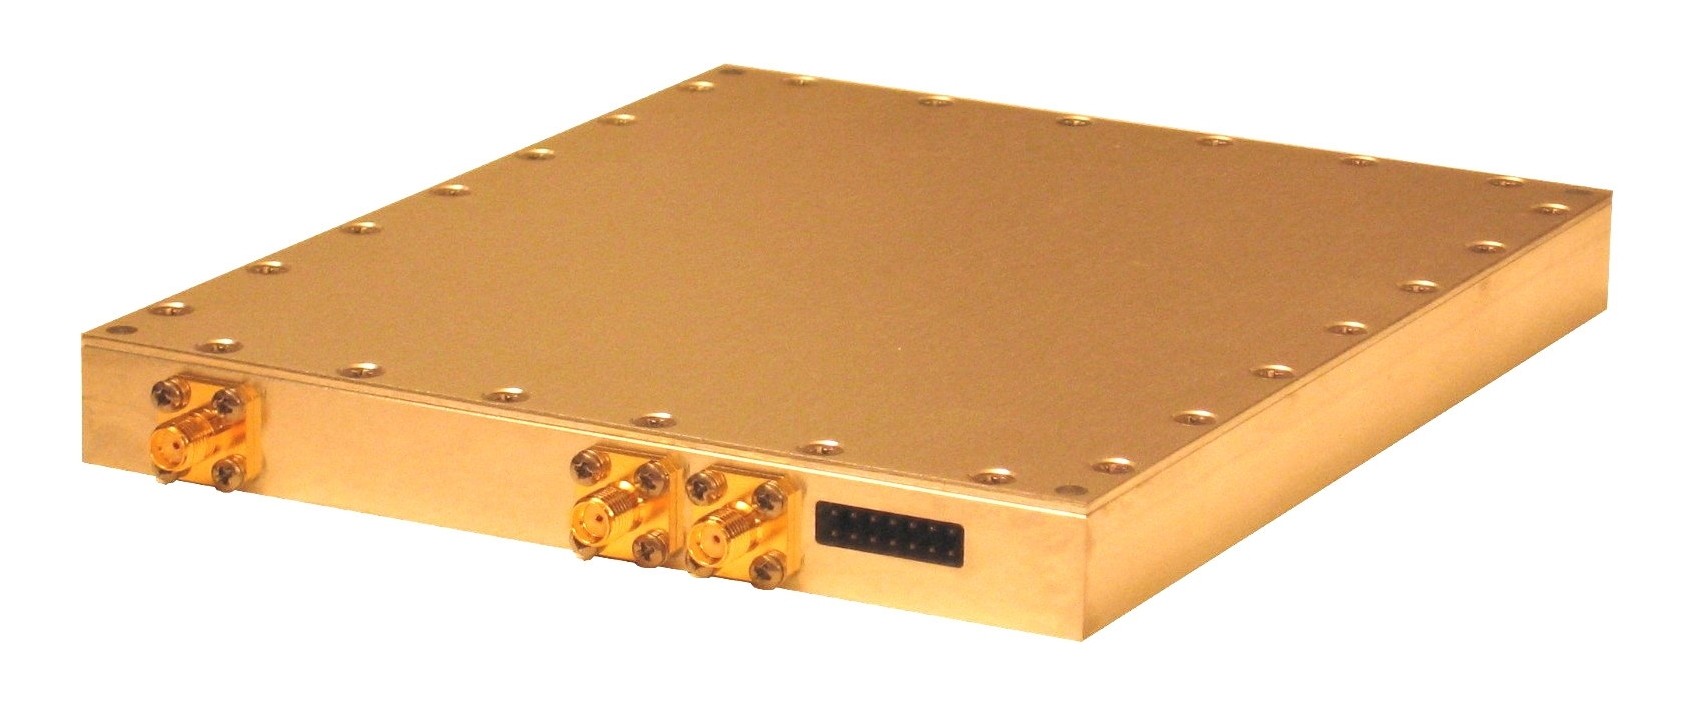  频率范围：29~~3840MHz,调谐分辨率：   1 Hz 
  调谐时间：   6 msec. 在PC电脑上一个WINDOWS程序通过RS-232接口来控制该模块。
